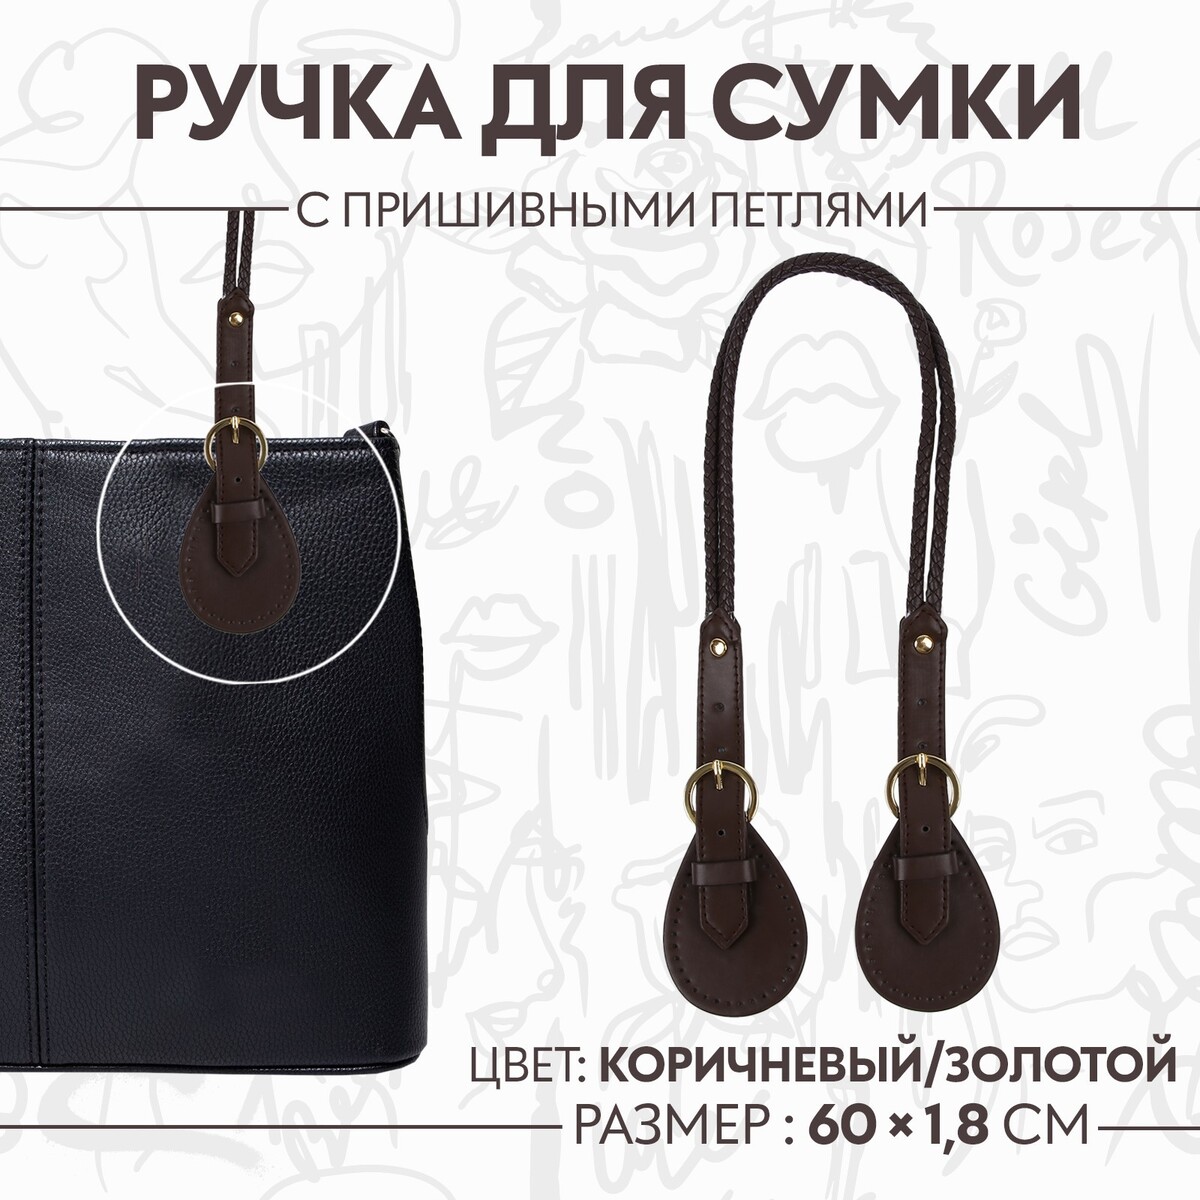 Ручка для сумки, шнуры, 60 × 1,8 см, с пришивными петлями 5,8 см, цвет коричневый/золотой ручка для сумки бусы d 14 мм 60 см золотой